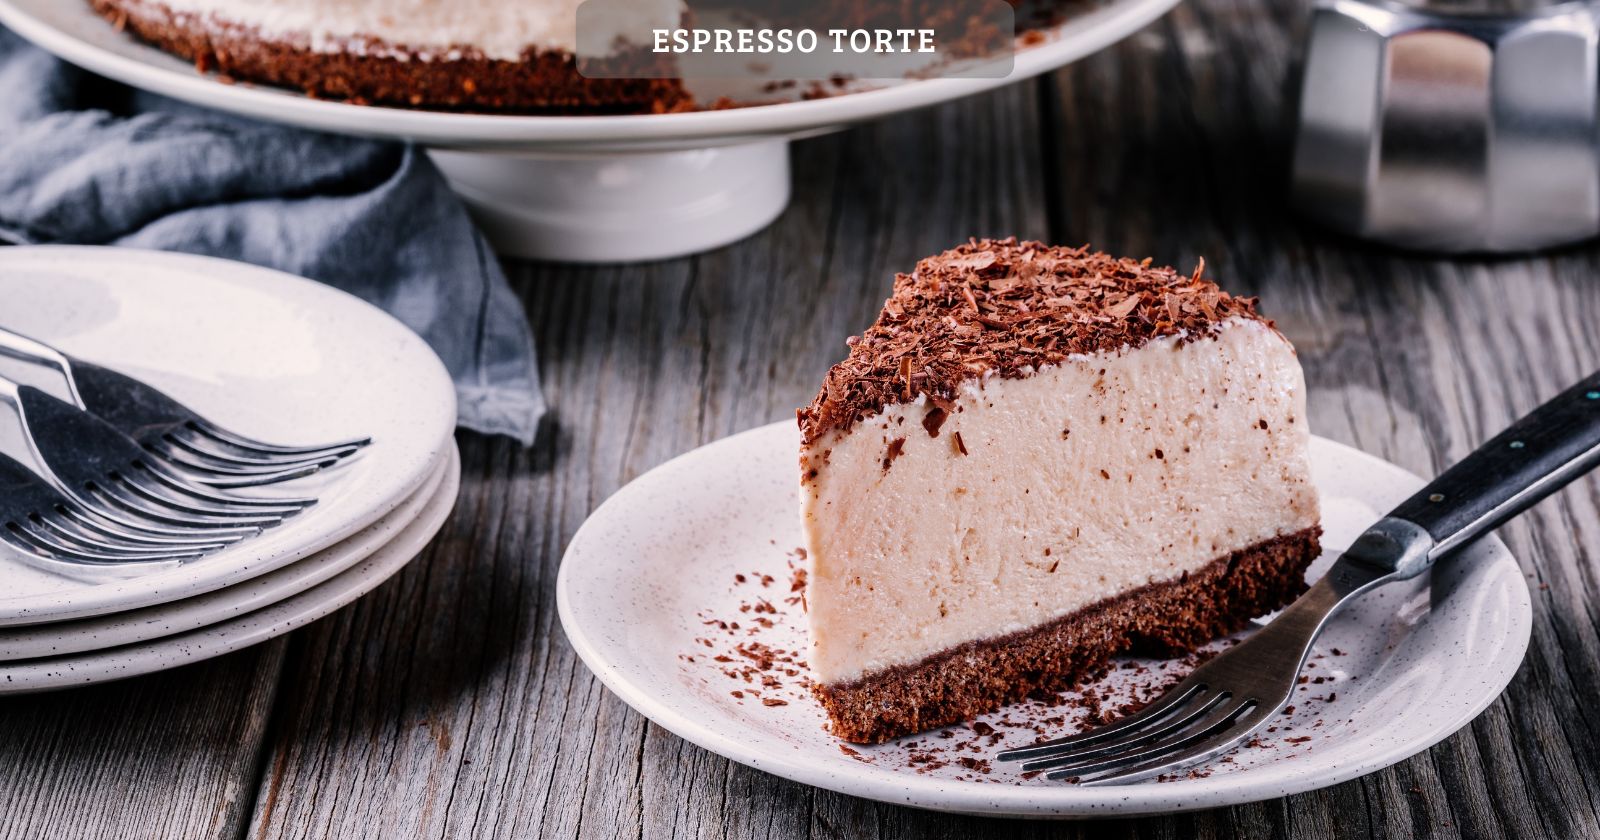 Espresso-torte